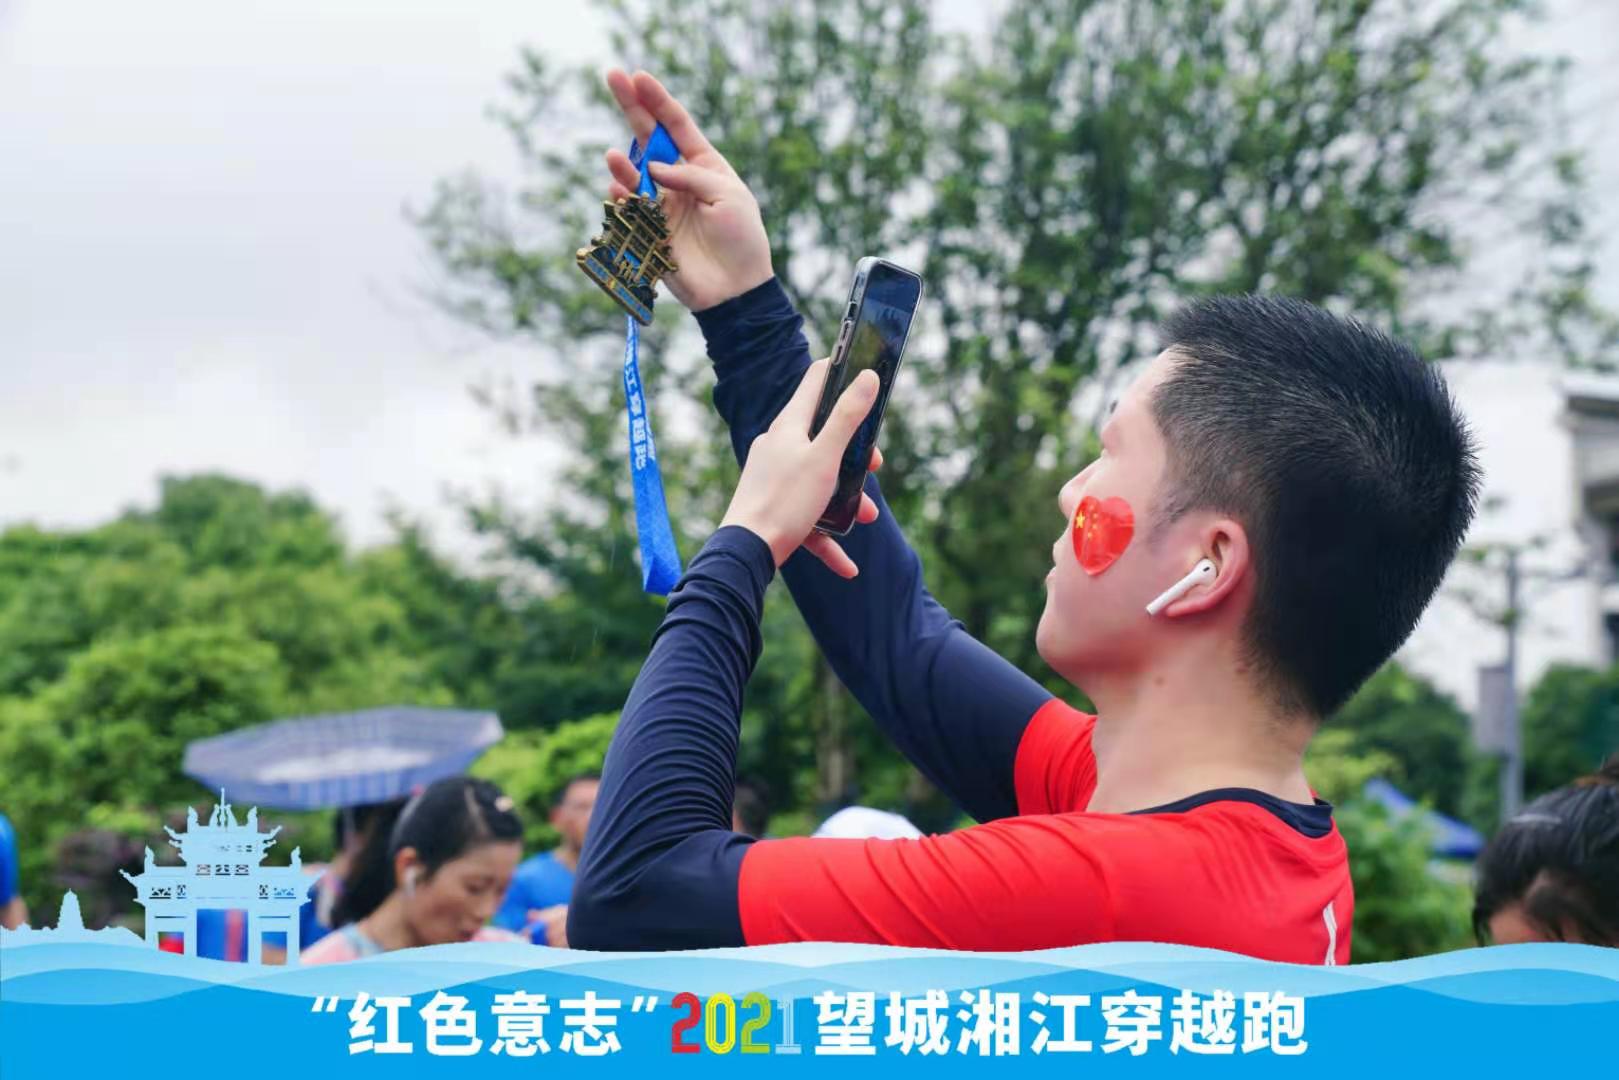 展示全国全域旅游示范区魅力  “红色意志”2021望城湘江穿越跑雨中激情开跑